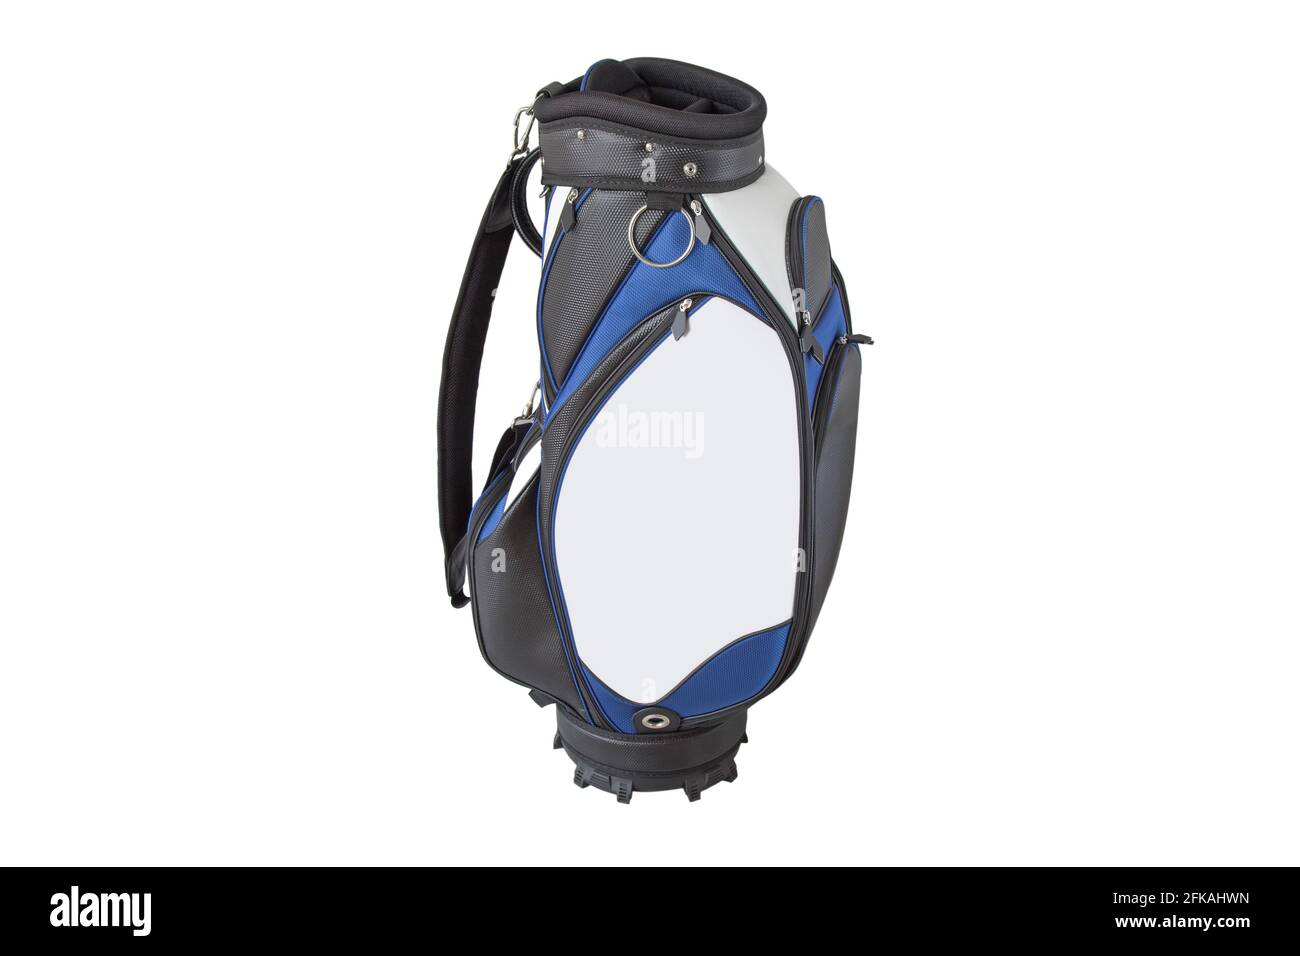 Vorderansicht einer Golftasche mit mehreren Taschen in Blau Weiß schwarz mit Schnellverschluss-Schulterriemen isoliert auf weiß Hintergrund Stockfoto